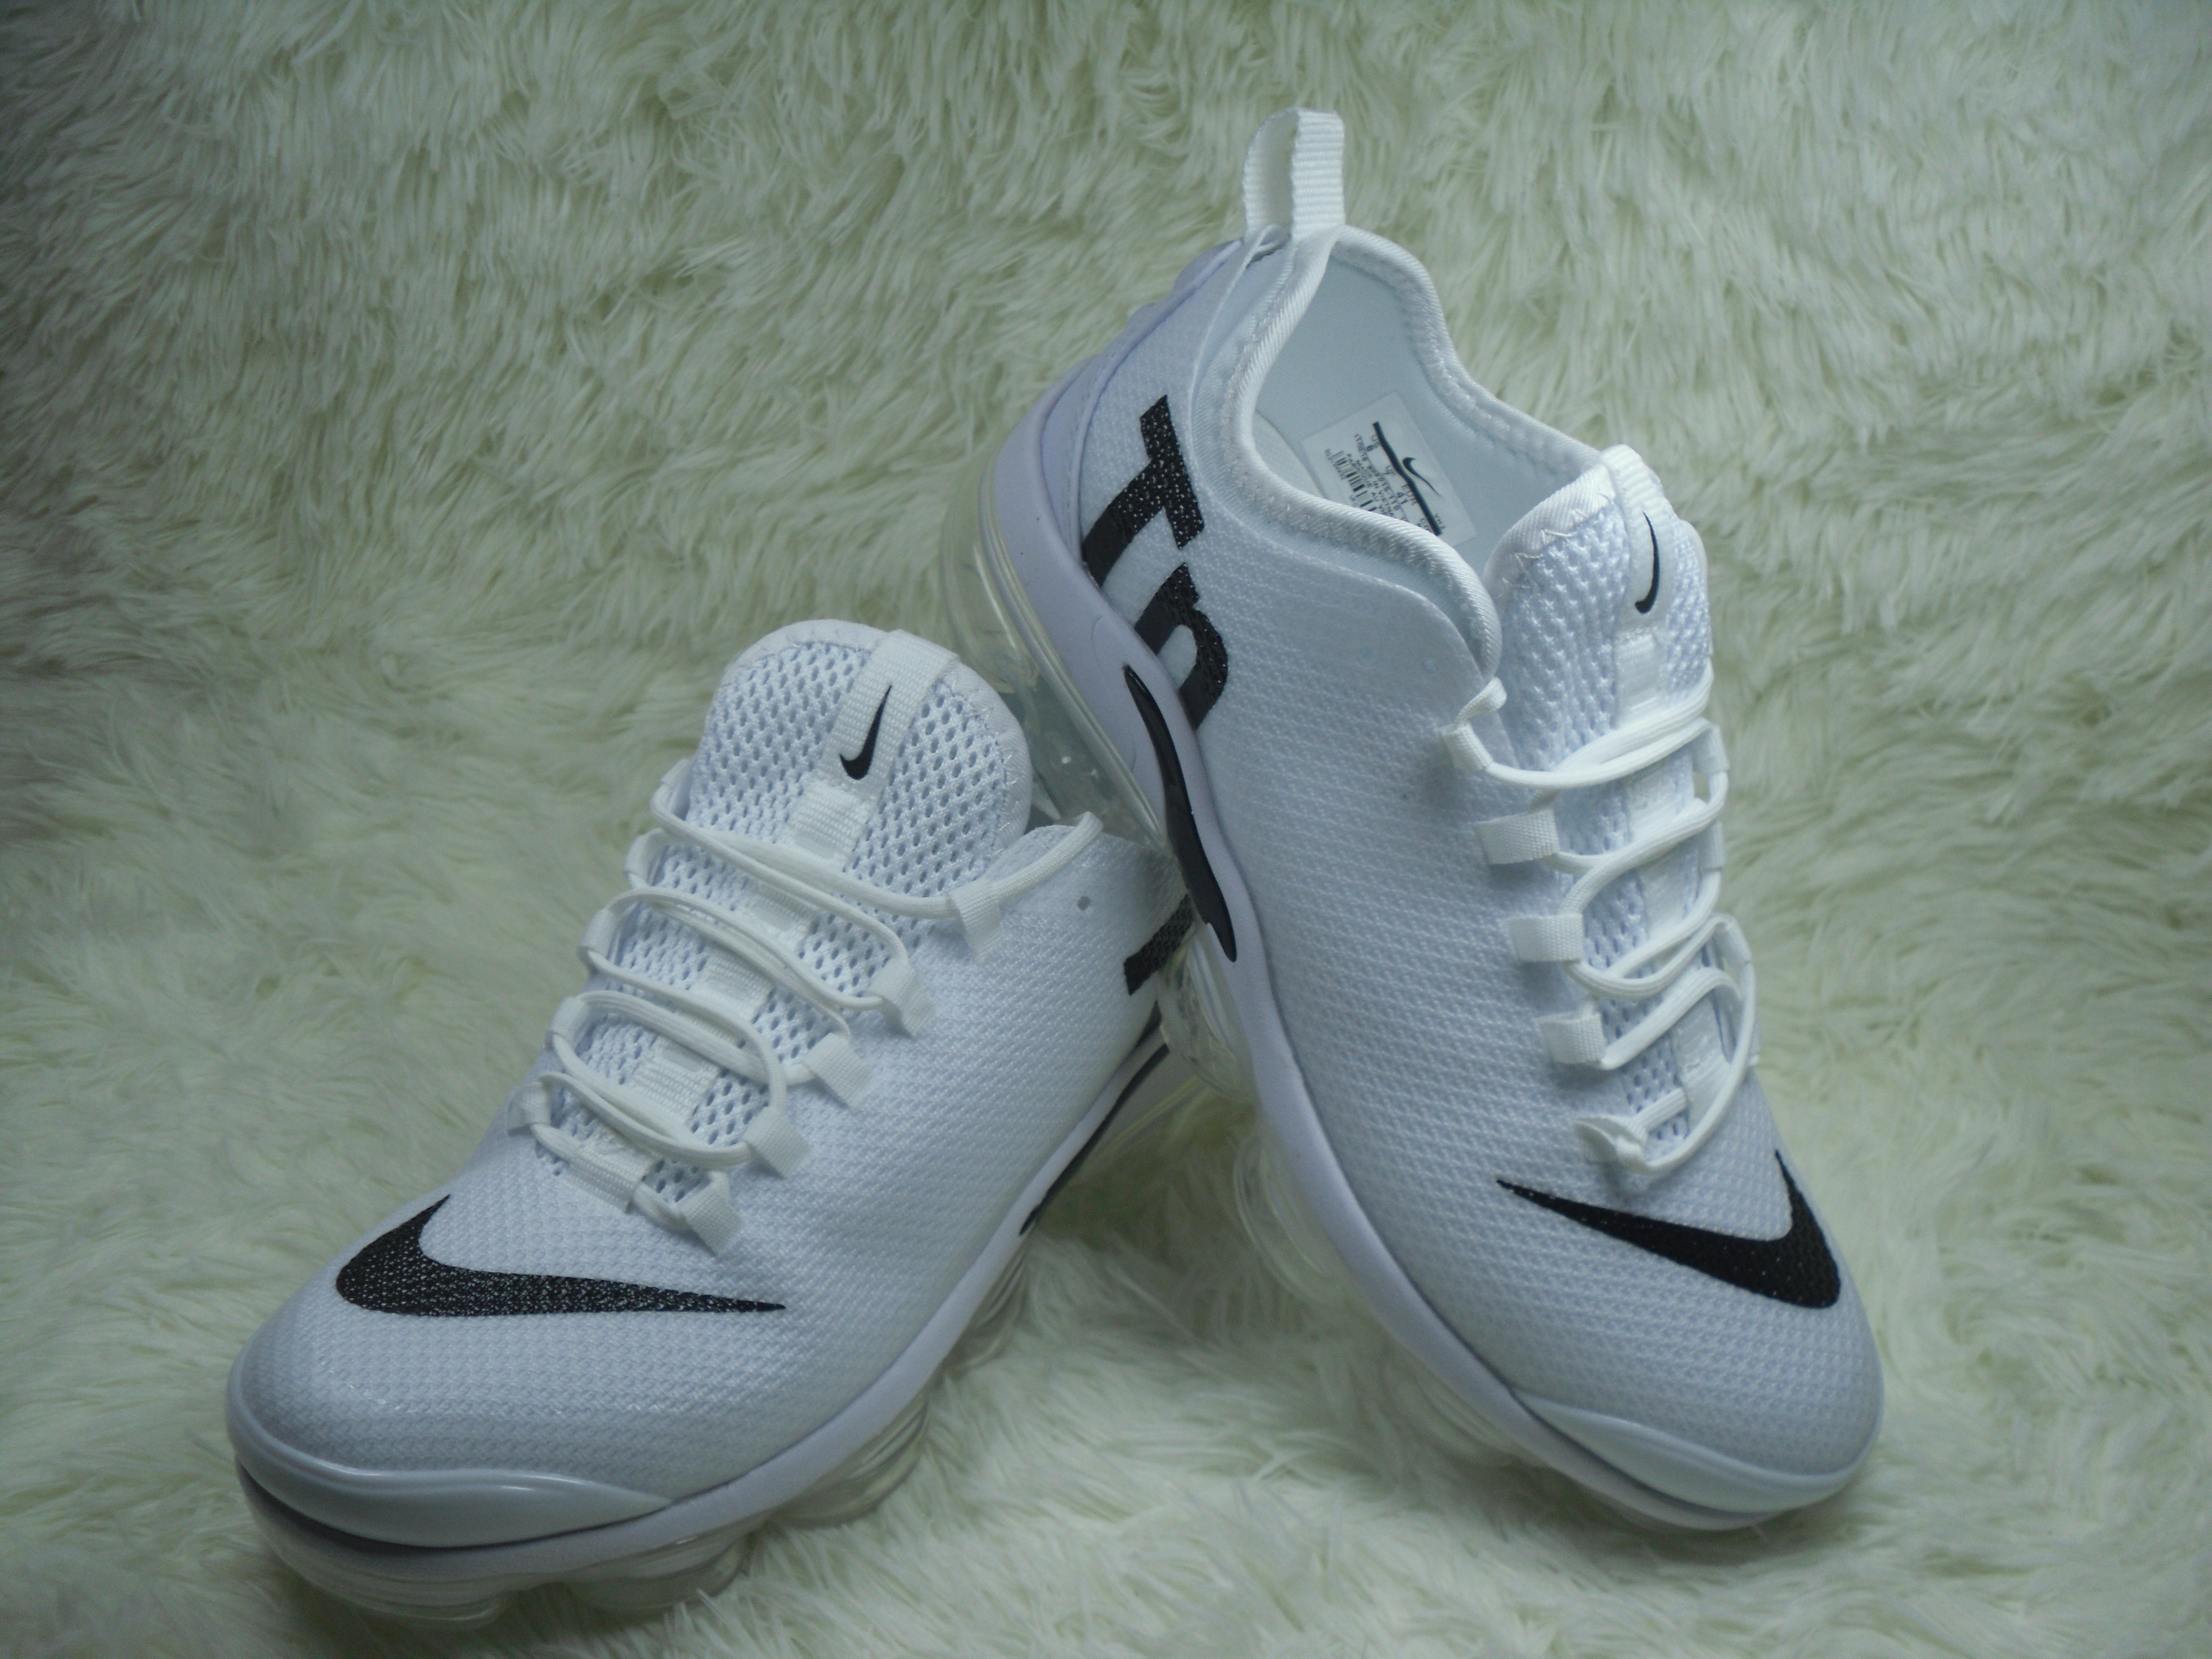 Nike Air Max Plus TN Summer White Black Shoes